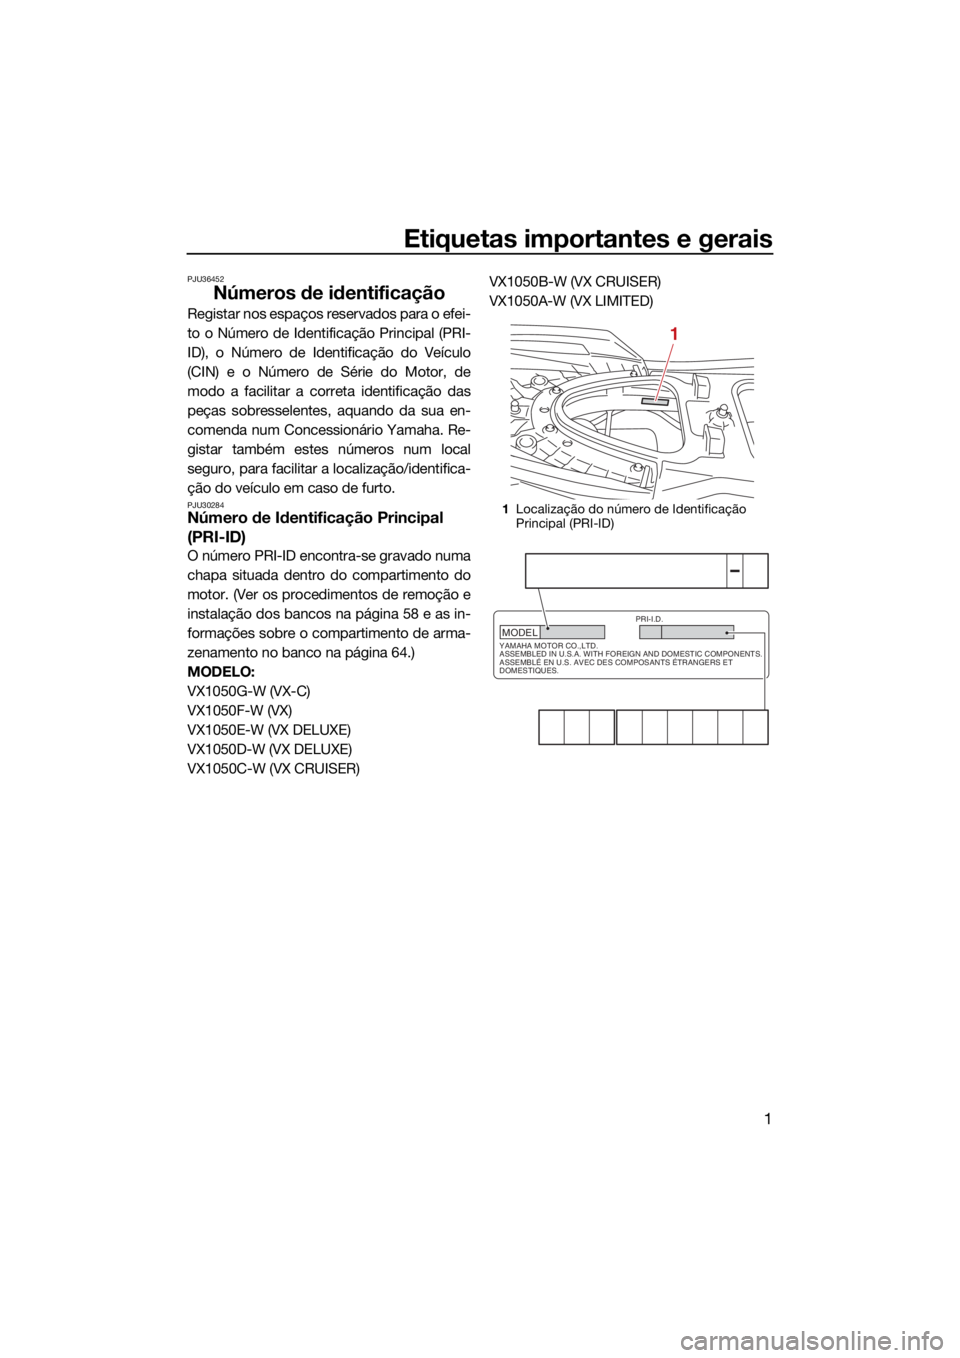 YAMAHA VX LIMITED 2021  Manual de utilização (in Portuguese) Etiquetas importantes e gerais
1
PJU36452
Números de identificação
Registar nos espaços reservados para o efei-
to o Número de Identificação Principal (PRI-
ID), o Número de Identificação do